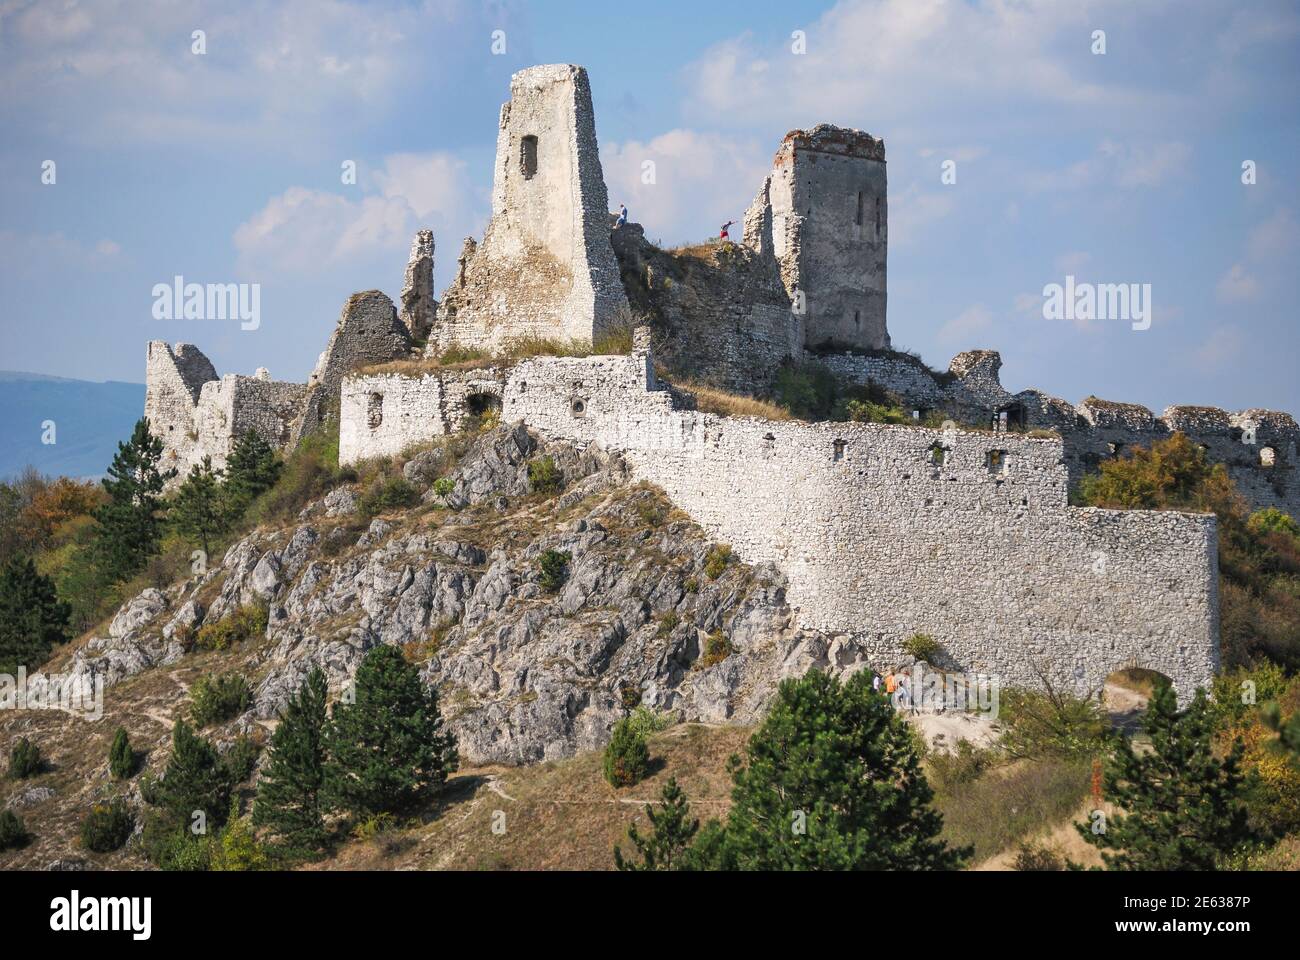 Ruines du château de Cachtice, ville de Cachtice, région de Trencin, Slovaquie Banque D'Images